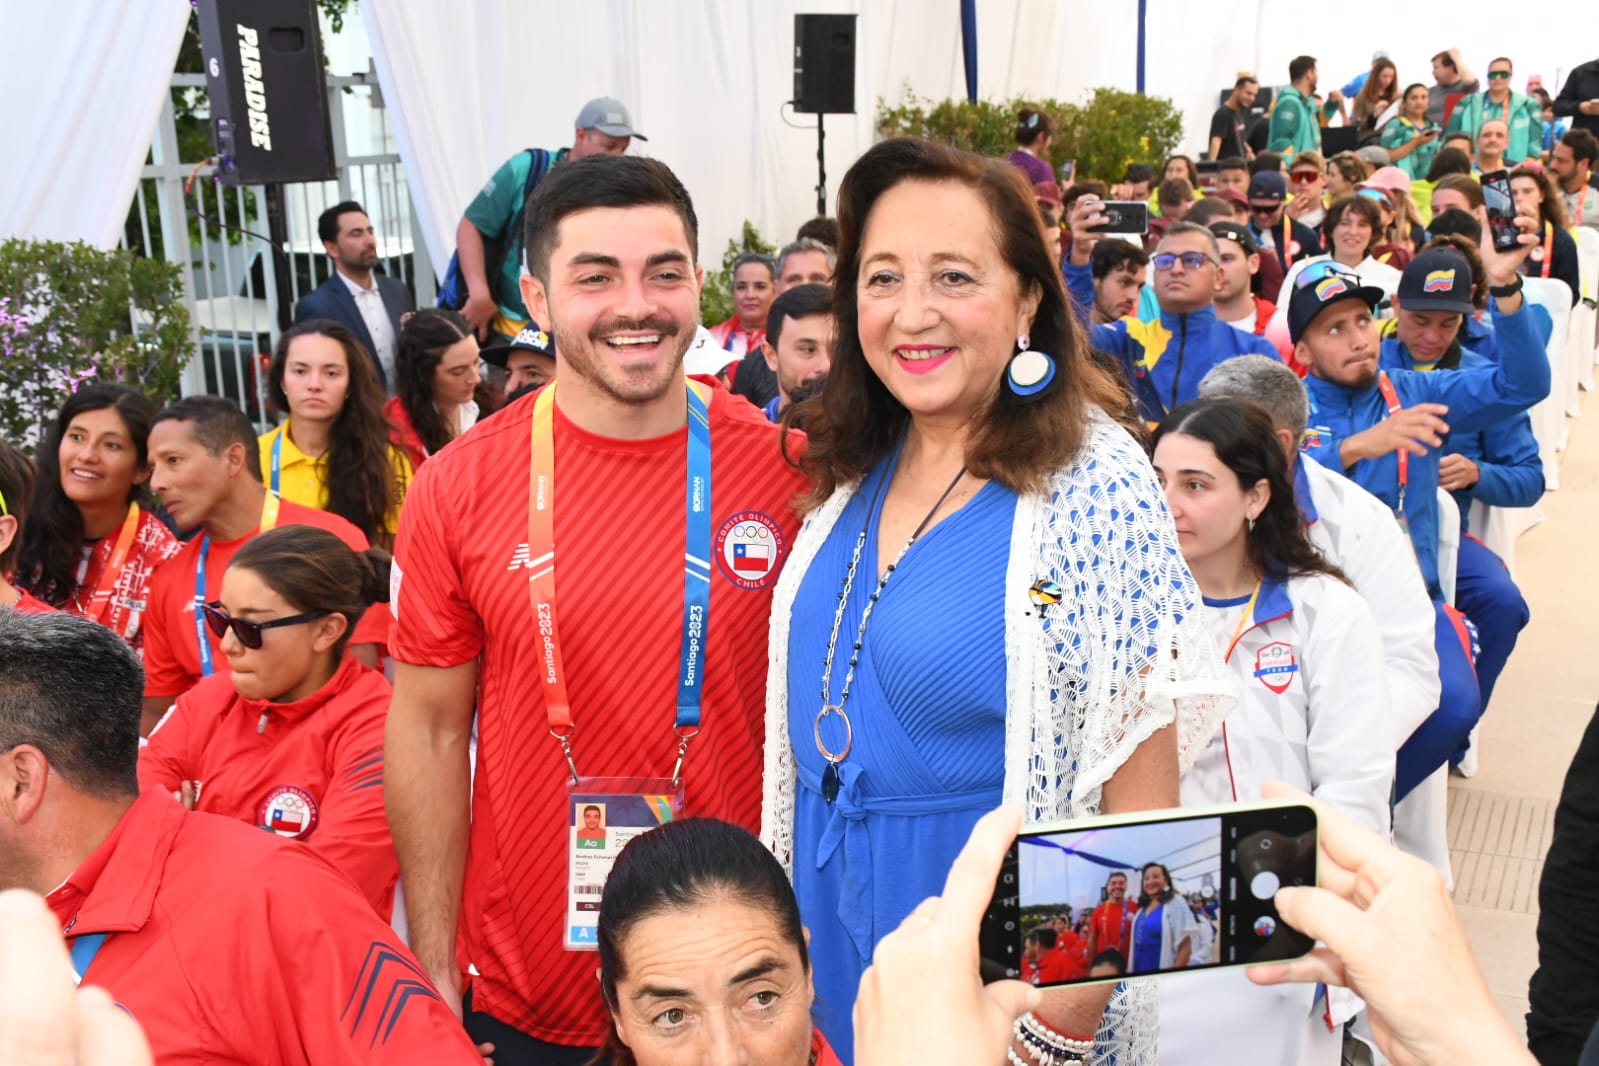 LOS ANDES: Consejera Regional María Victoria Rodríguez destacó que la competencia del Canotaje se realice en la Provincia de Los Andes